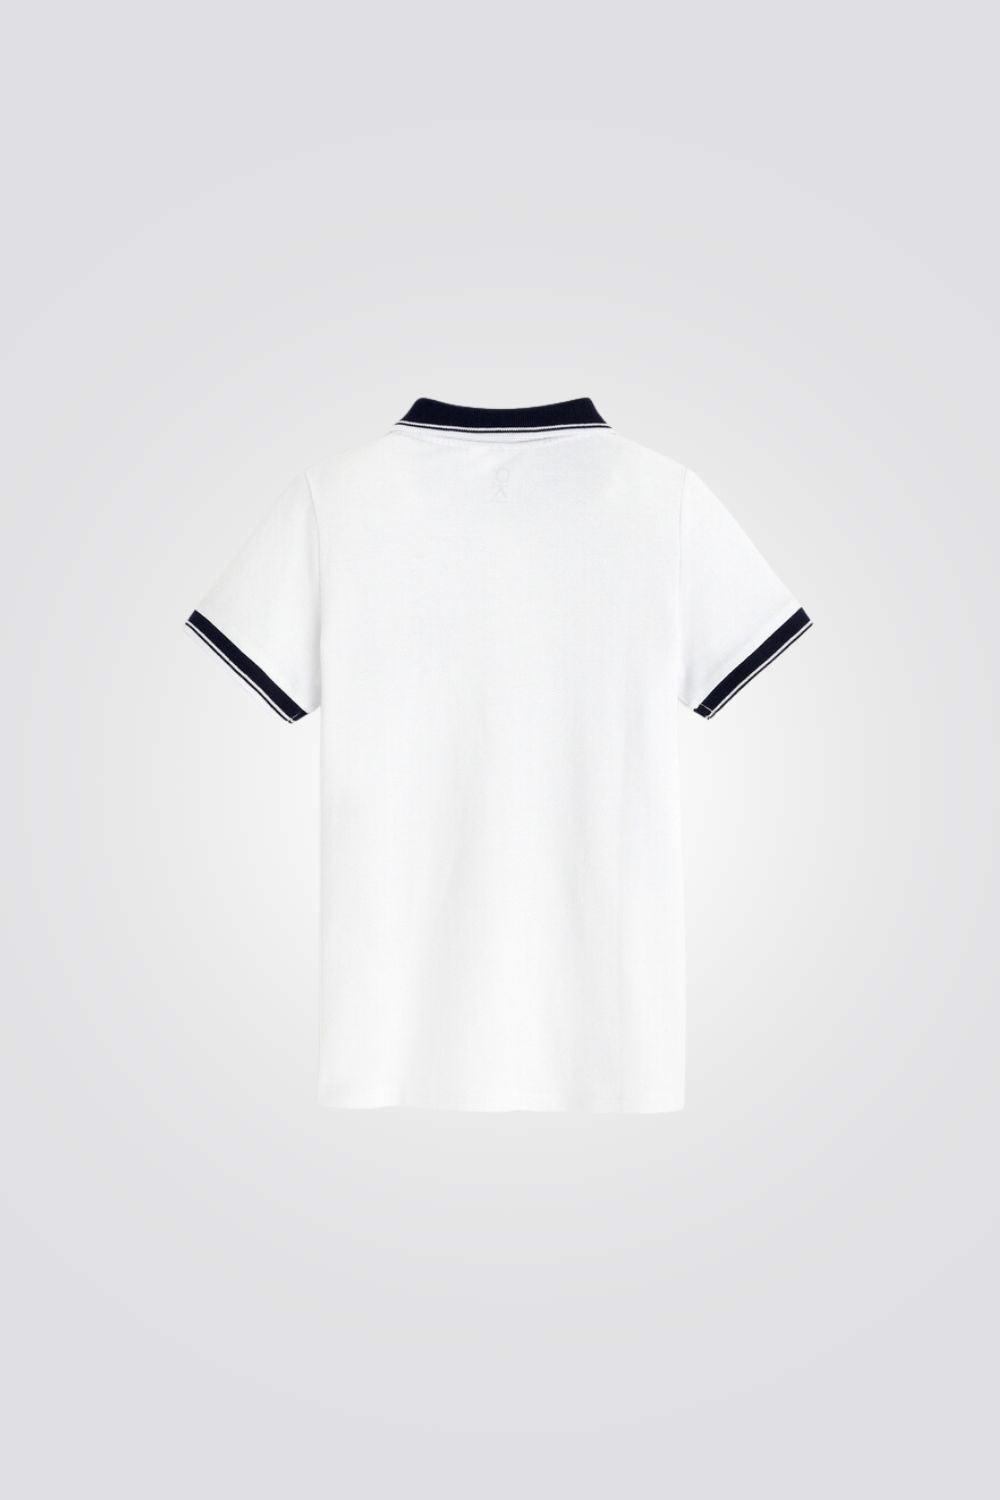 חולצת פולו לילדים בצבע לבן - MASHBIR//365